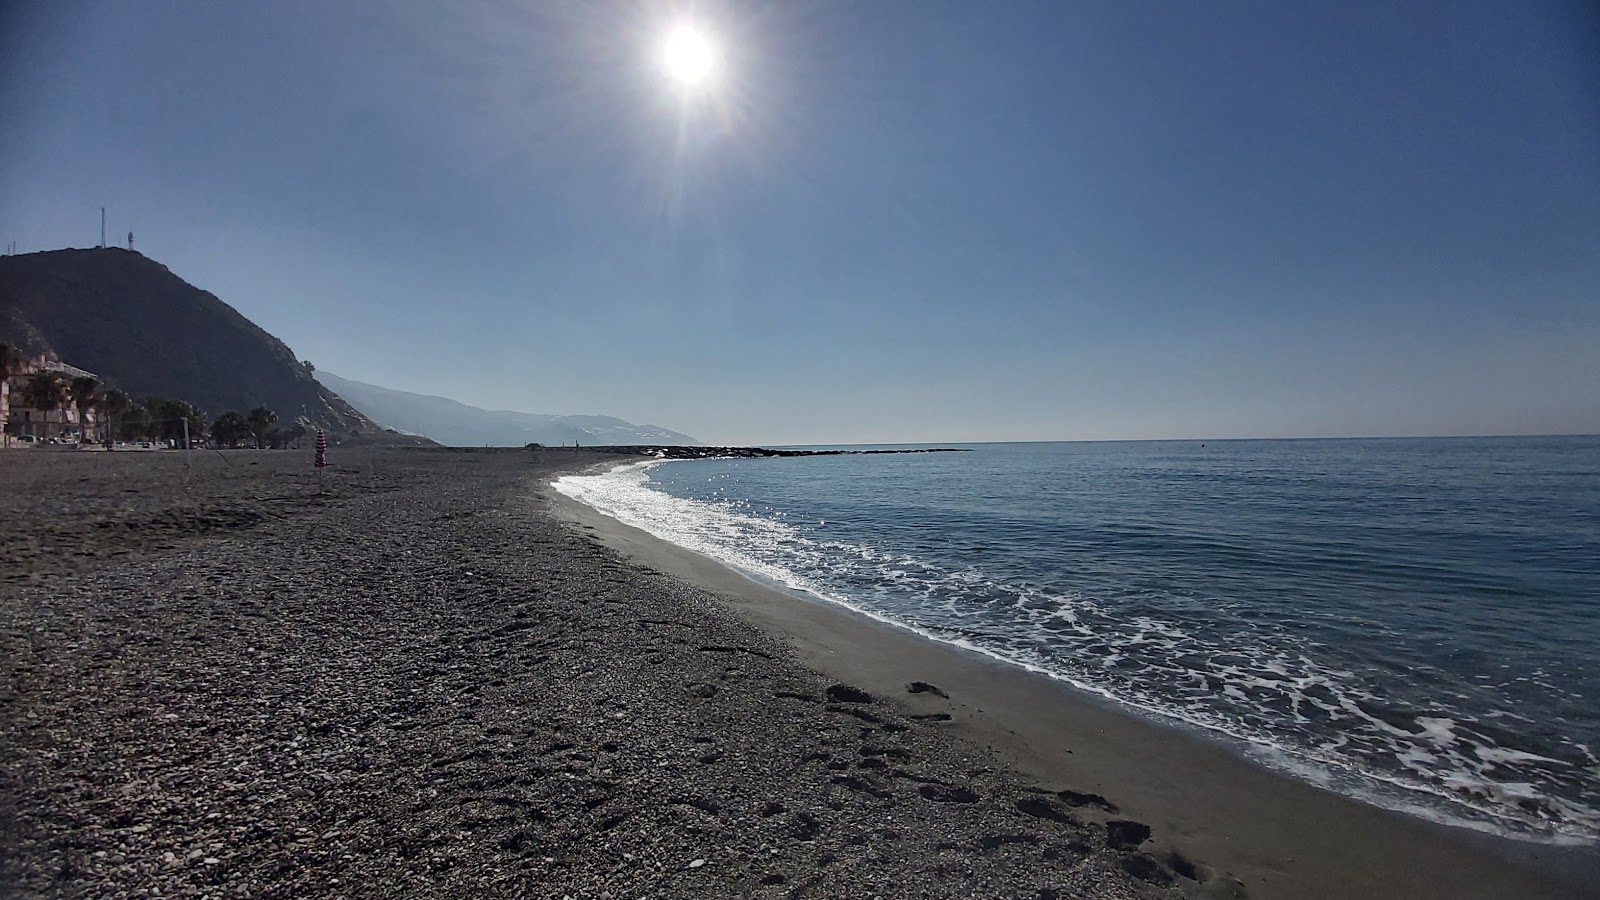 Zdjęcie La MamoLa beach - popularne miejsce wśród znawców relaksu